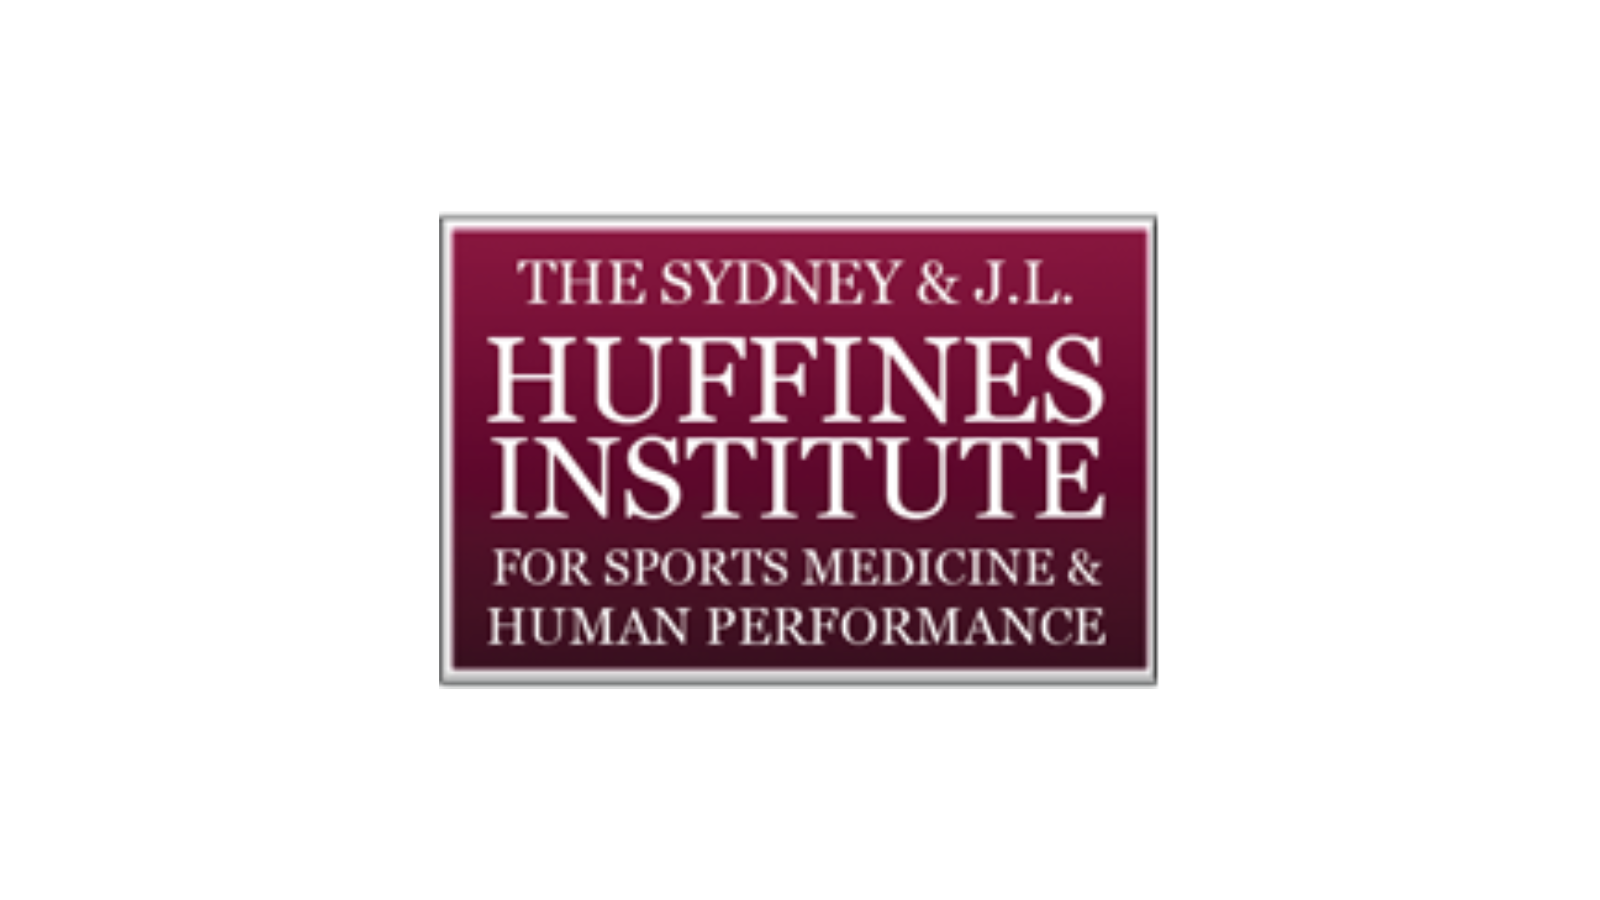 Huffines Institute